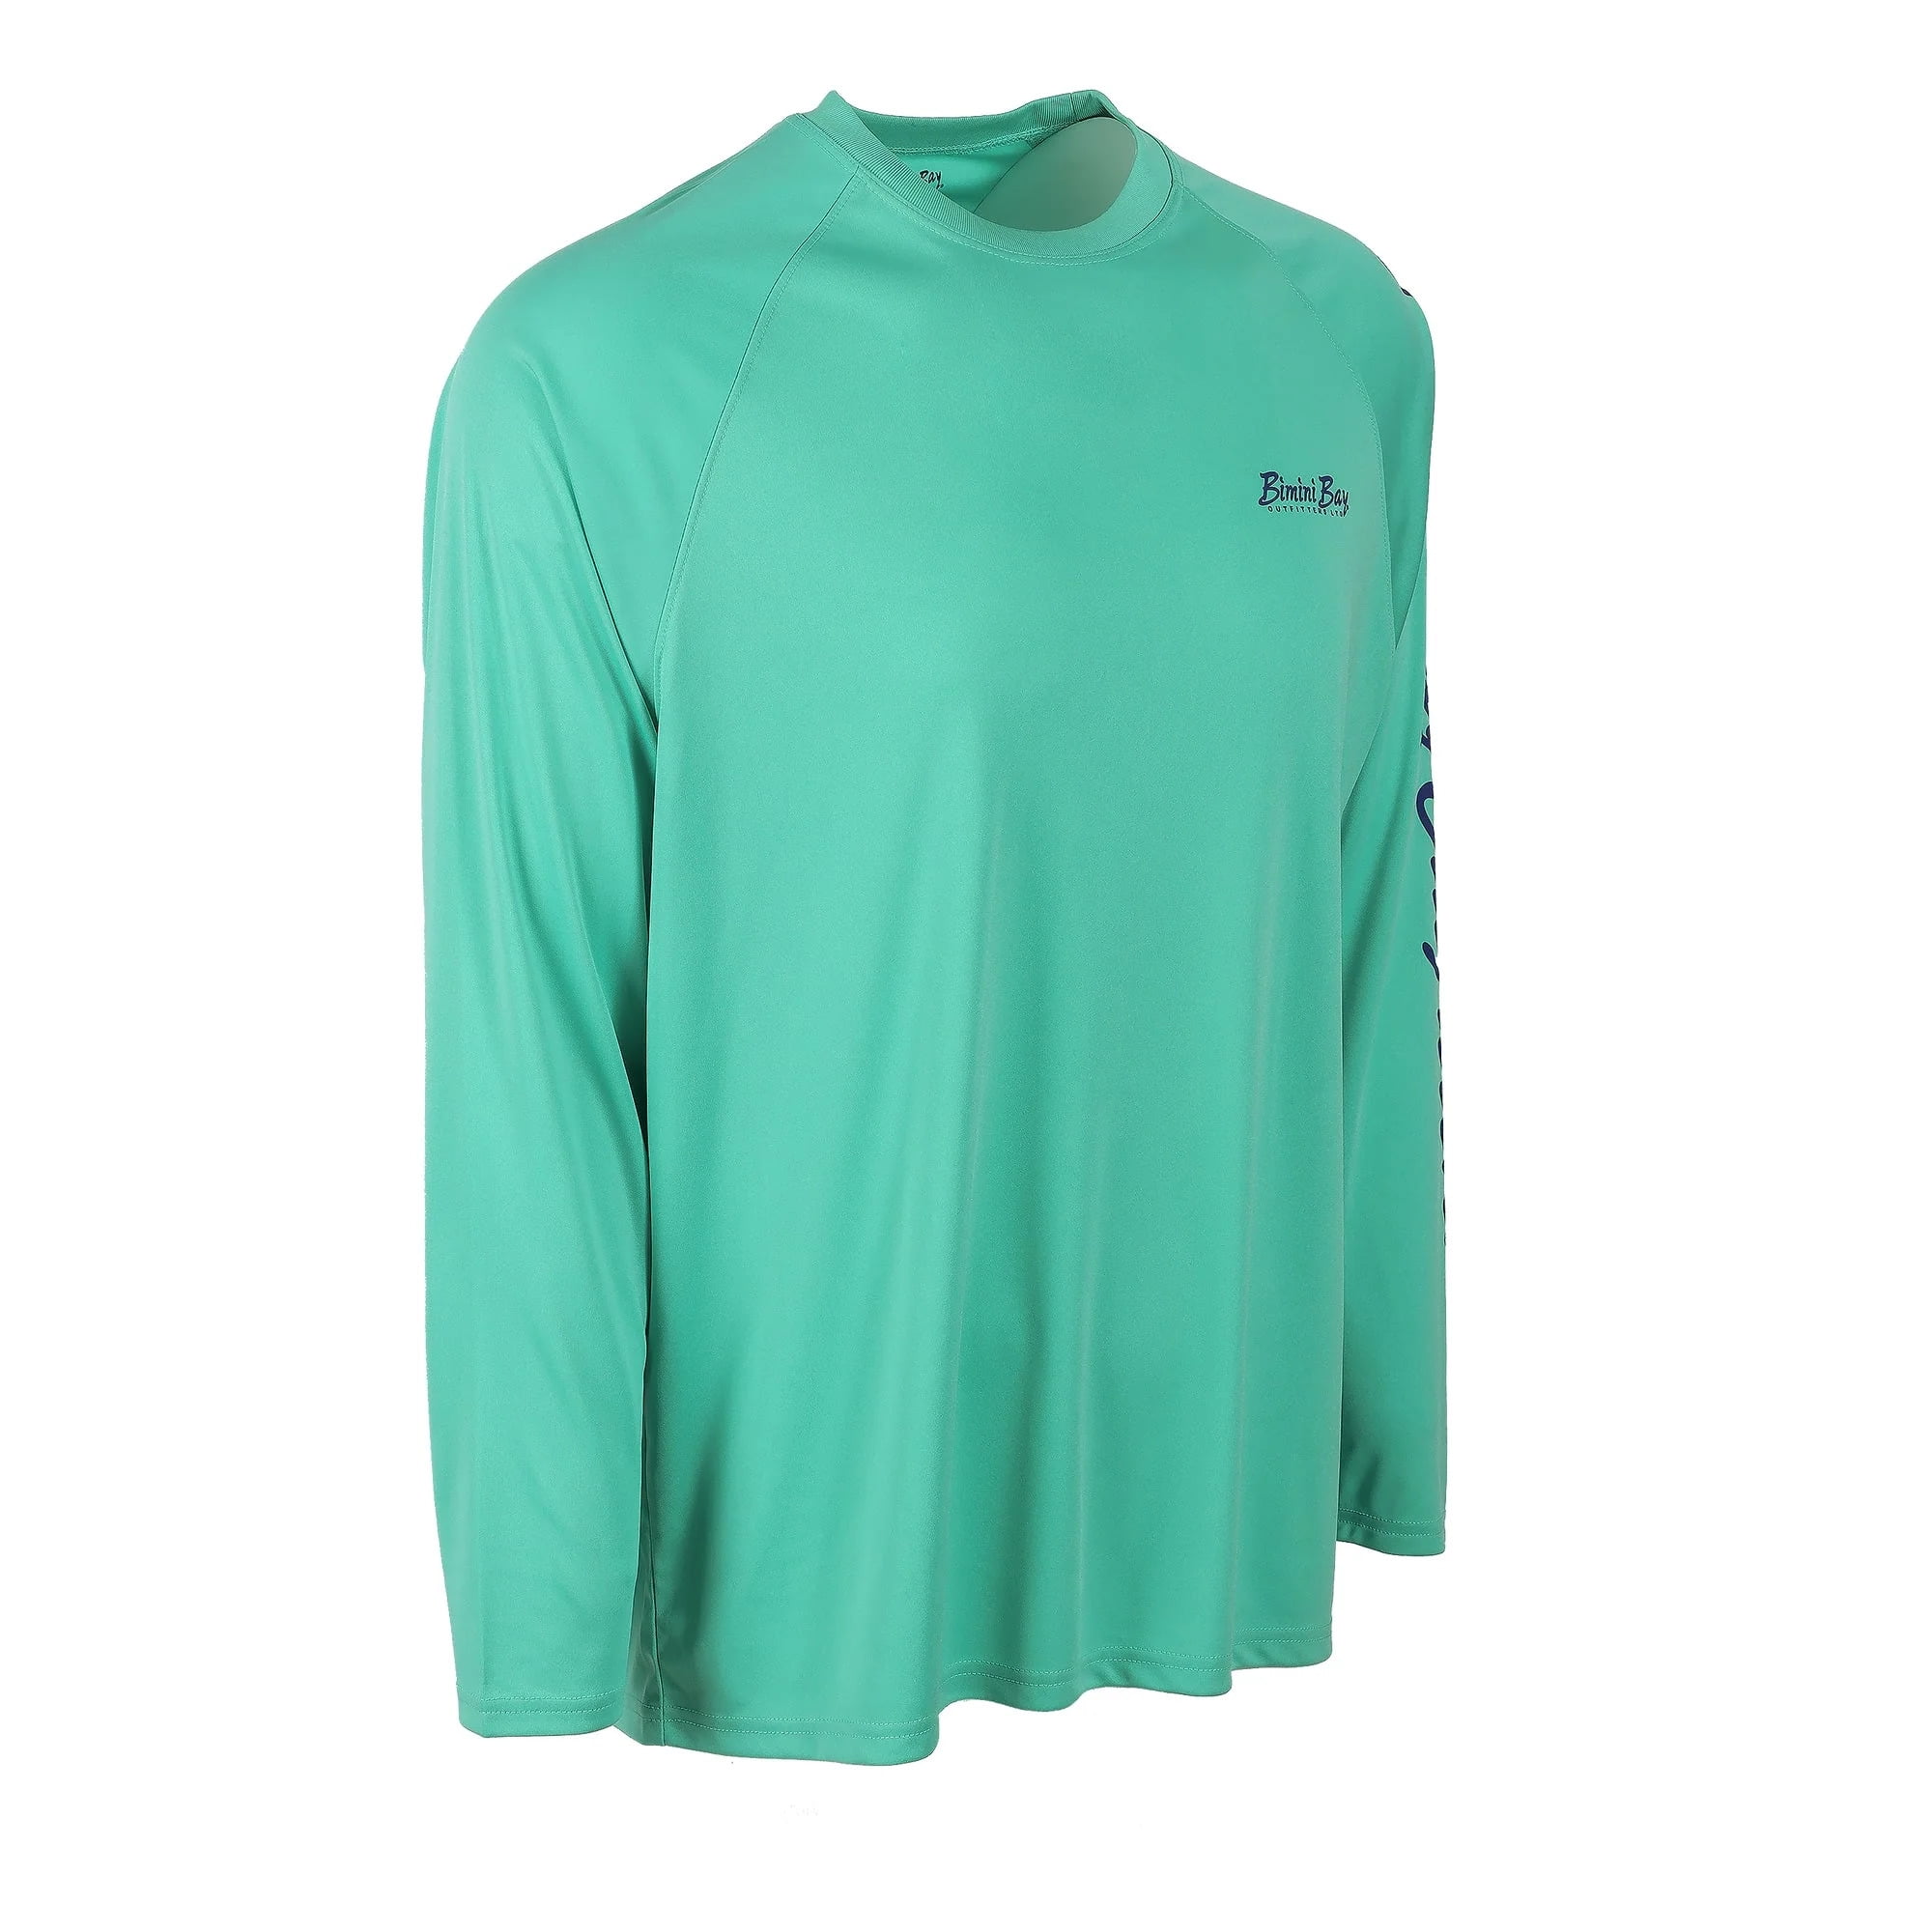 Bimini Bay Outfitters Hook M' Men's Long Sleeve Shirt - Tarpon 2 Aquatic 